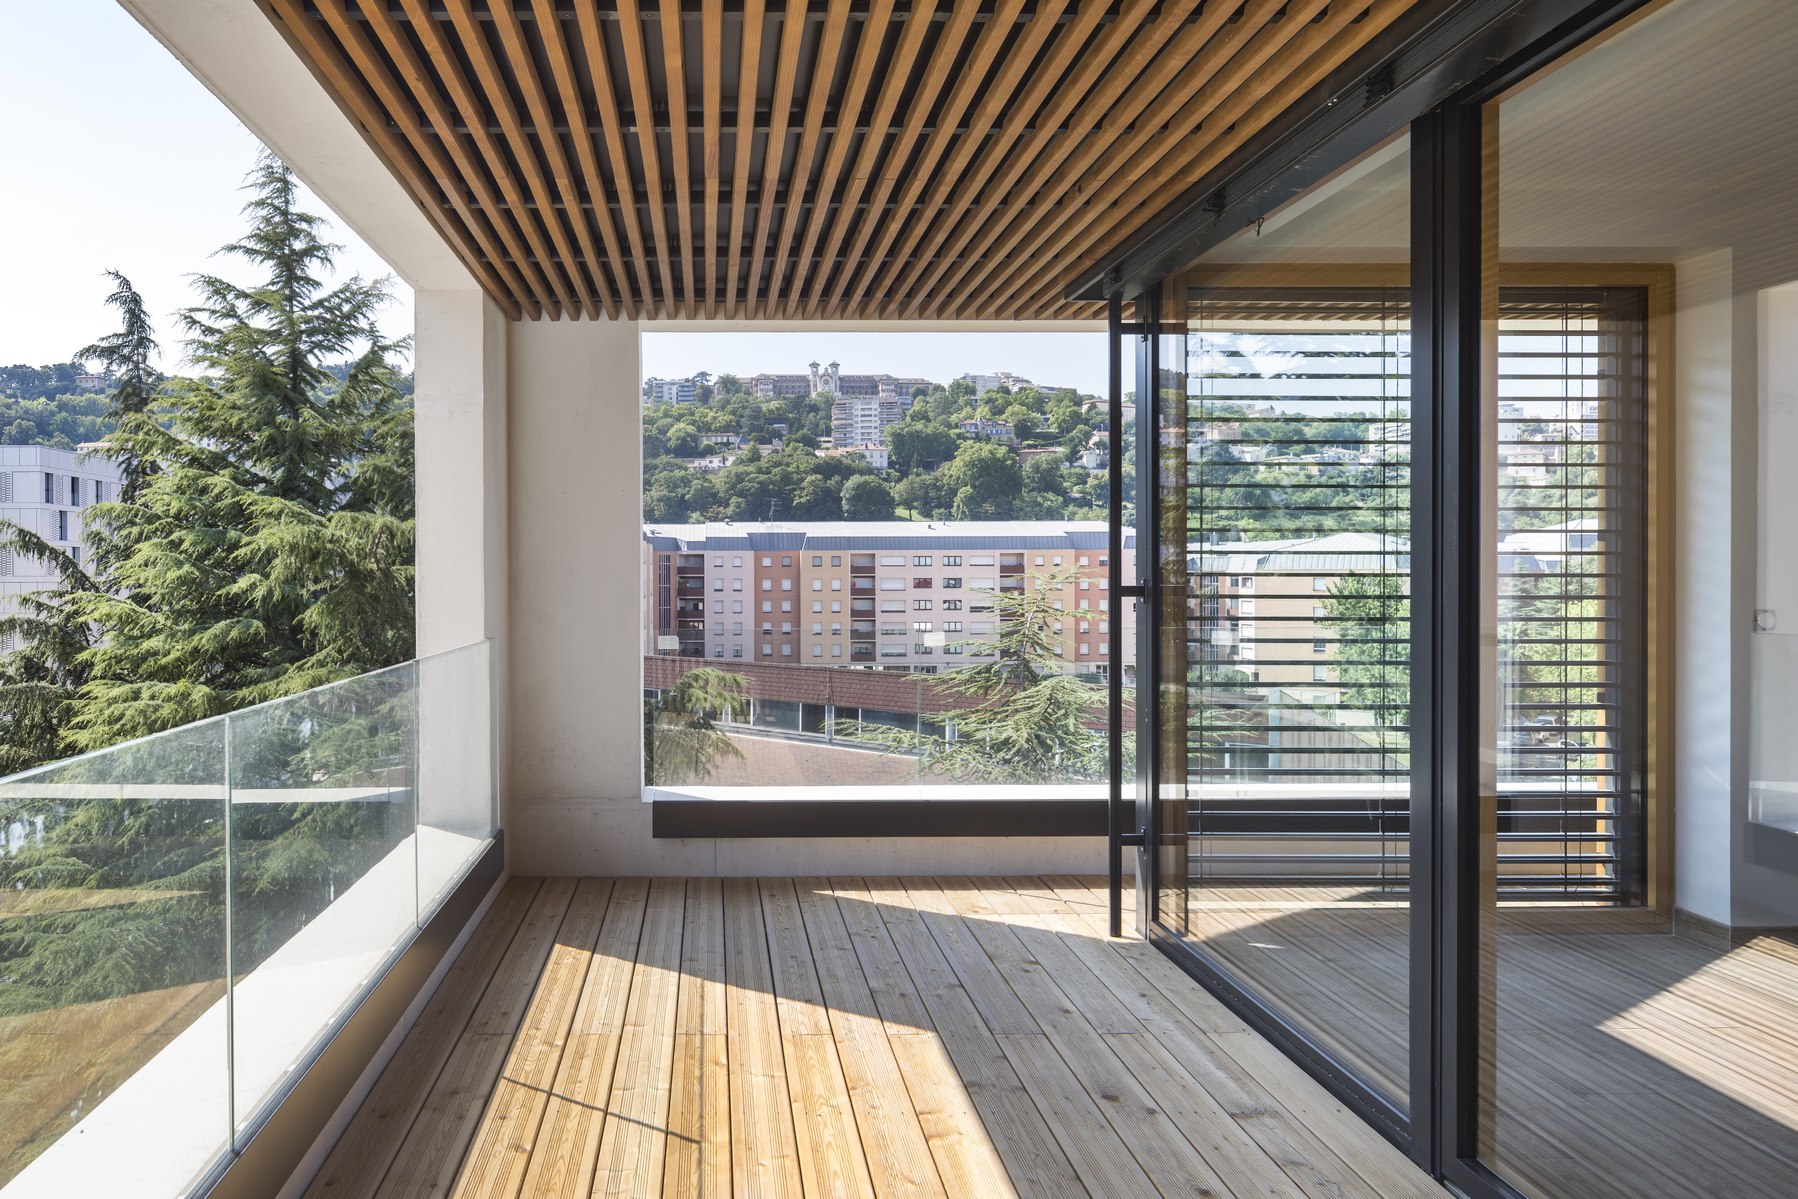 Ilot G / les Loges de Saône - Lyon Confluence - Z Architecture